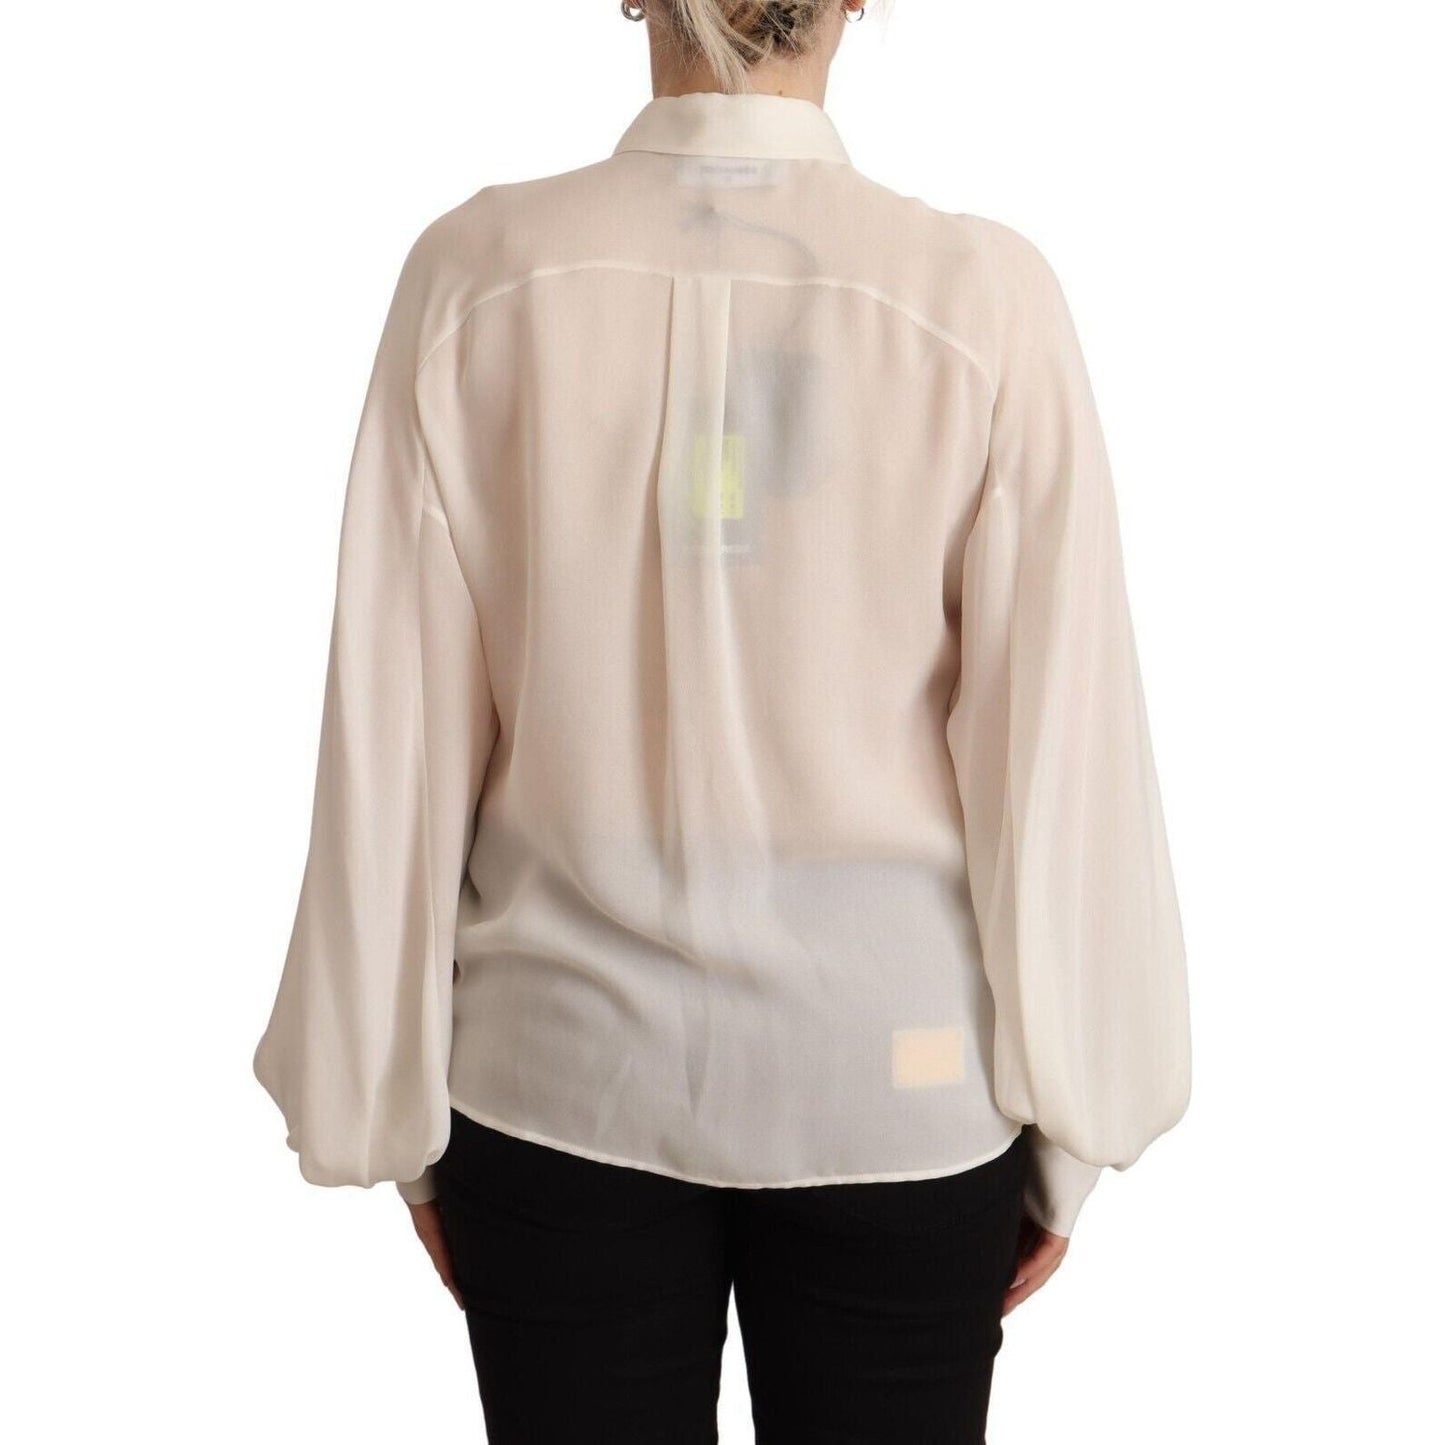 Dsquared² Elegant Off White Silk Long Sleeve Blouse off-white-silk-long-sleeves-collared-blouse-top